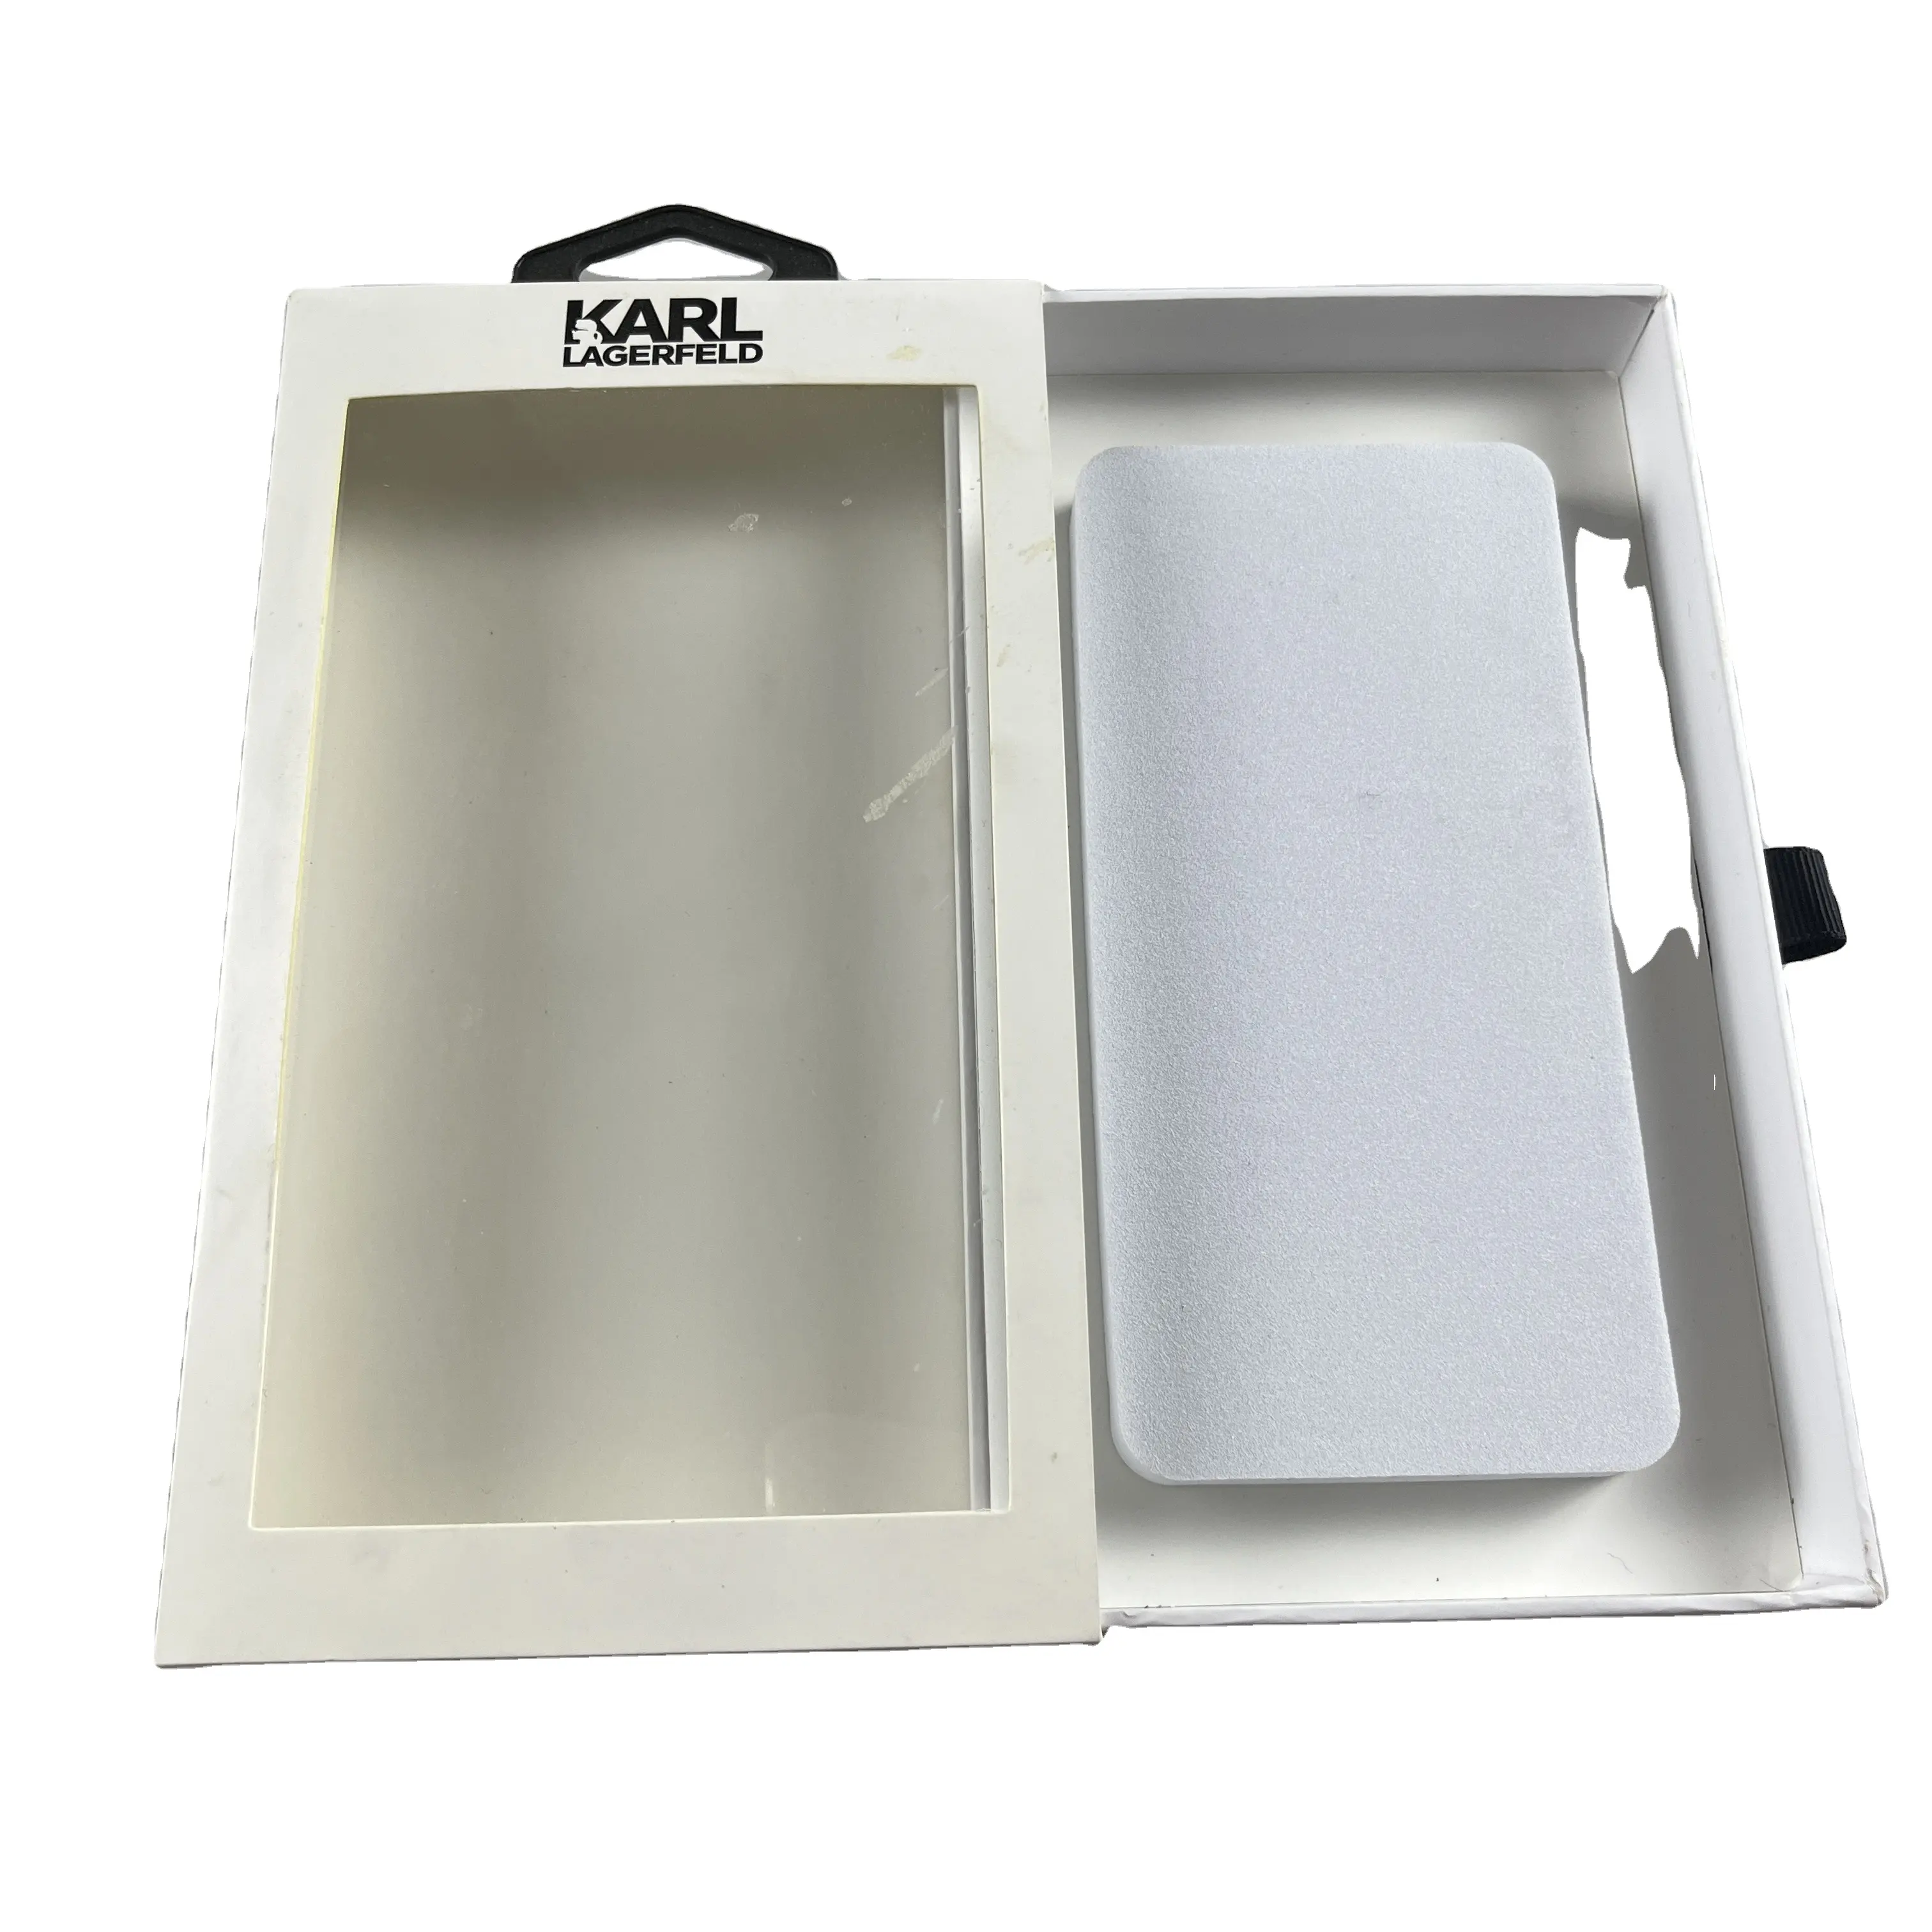 Embalaje de caja de teléfono minorista de lujo personalizado, caja de gancho y caja de papel estilo cajón, adecuado para varios modelos de teléfono